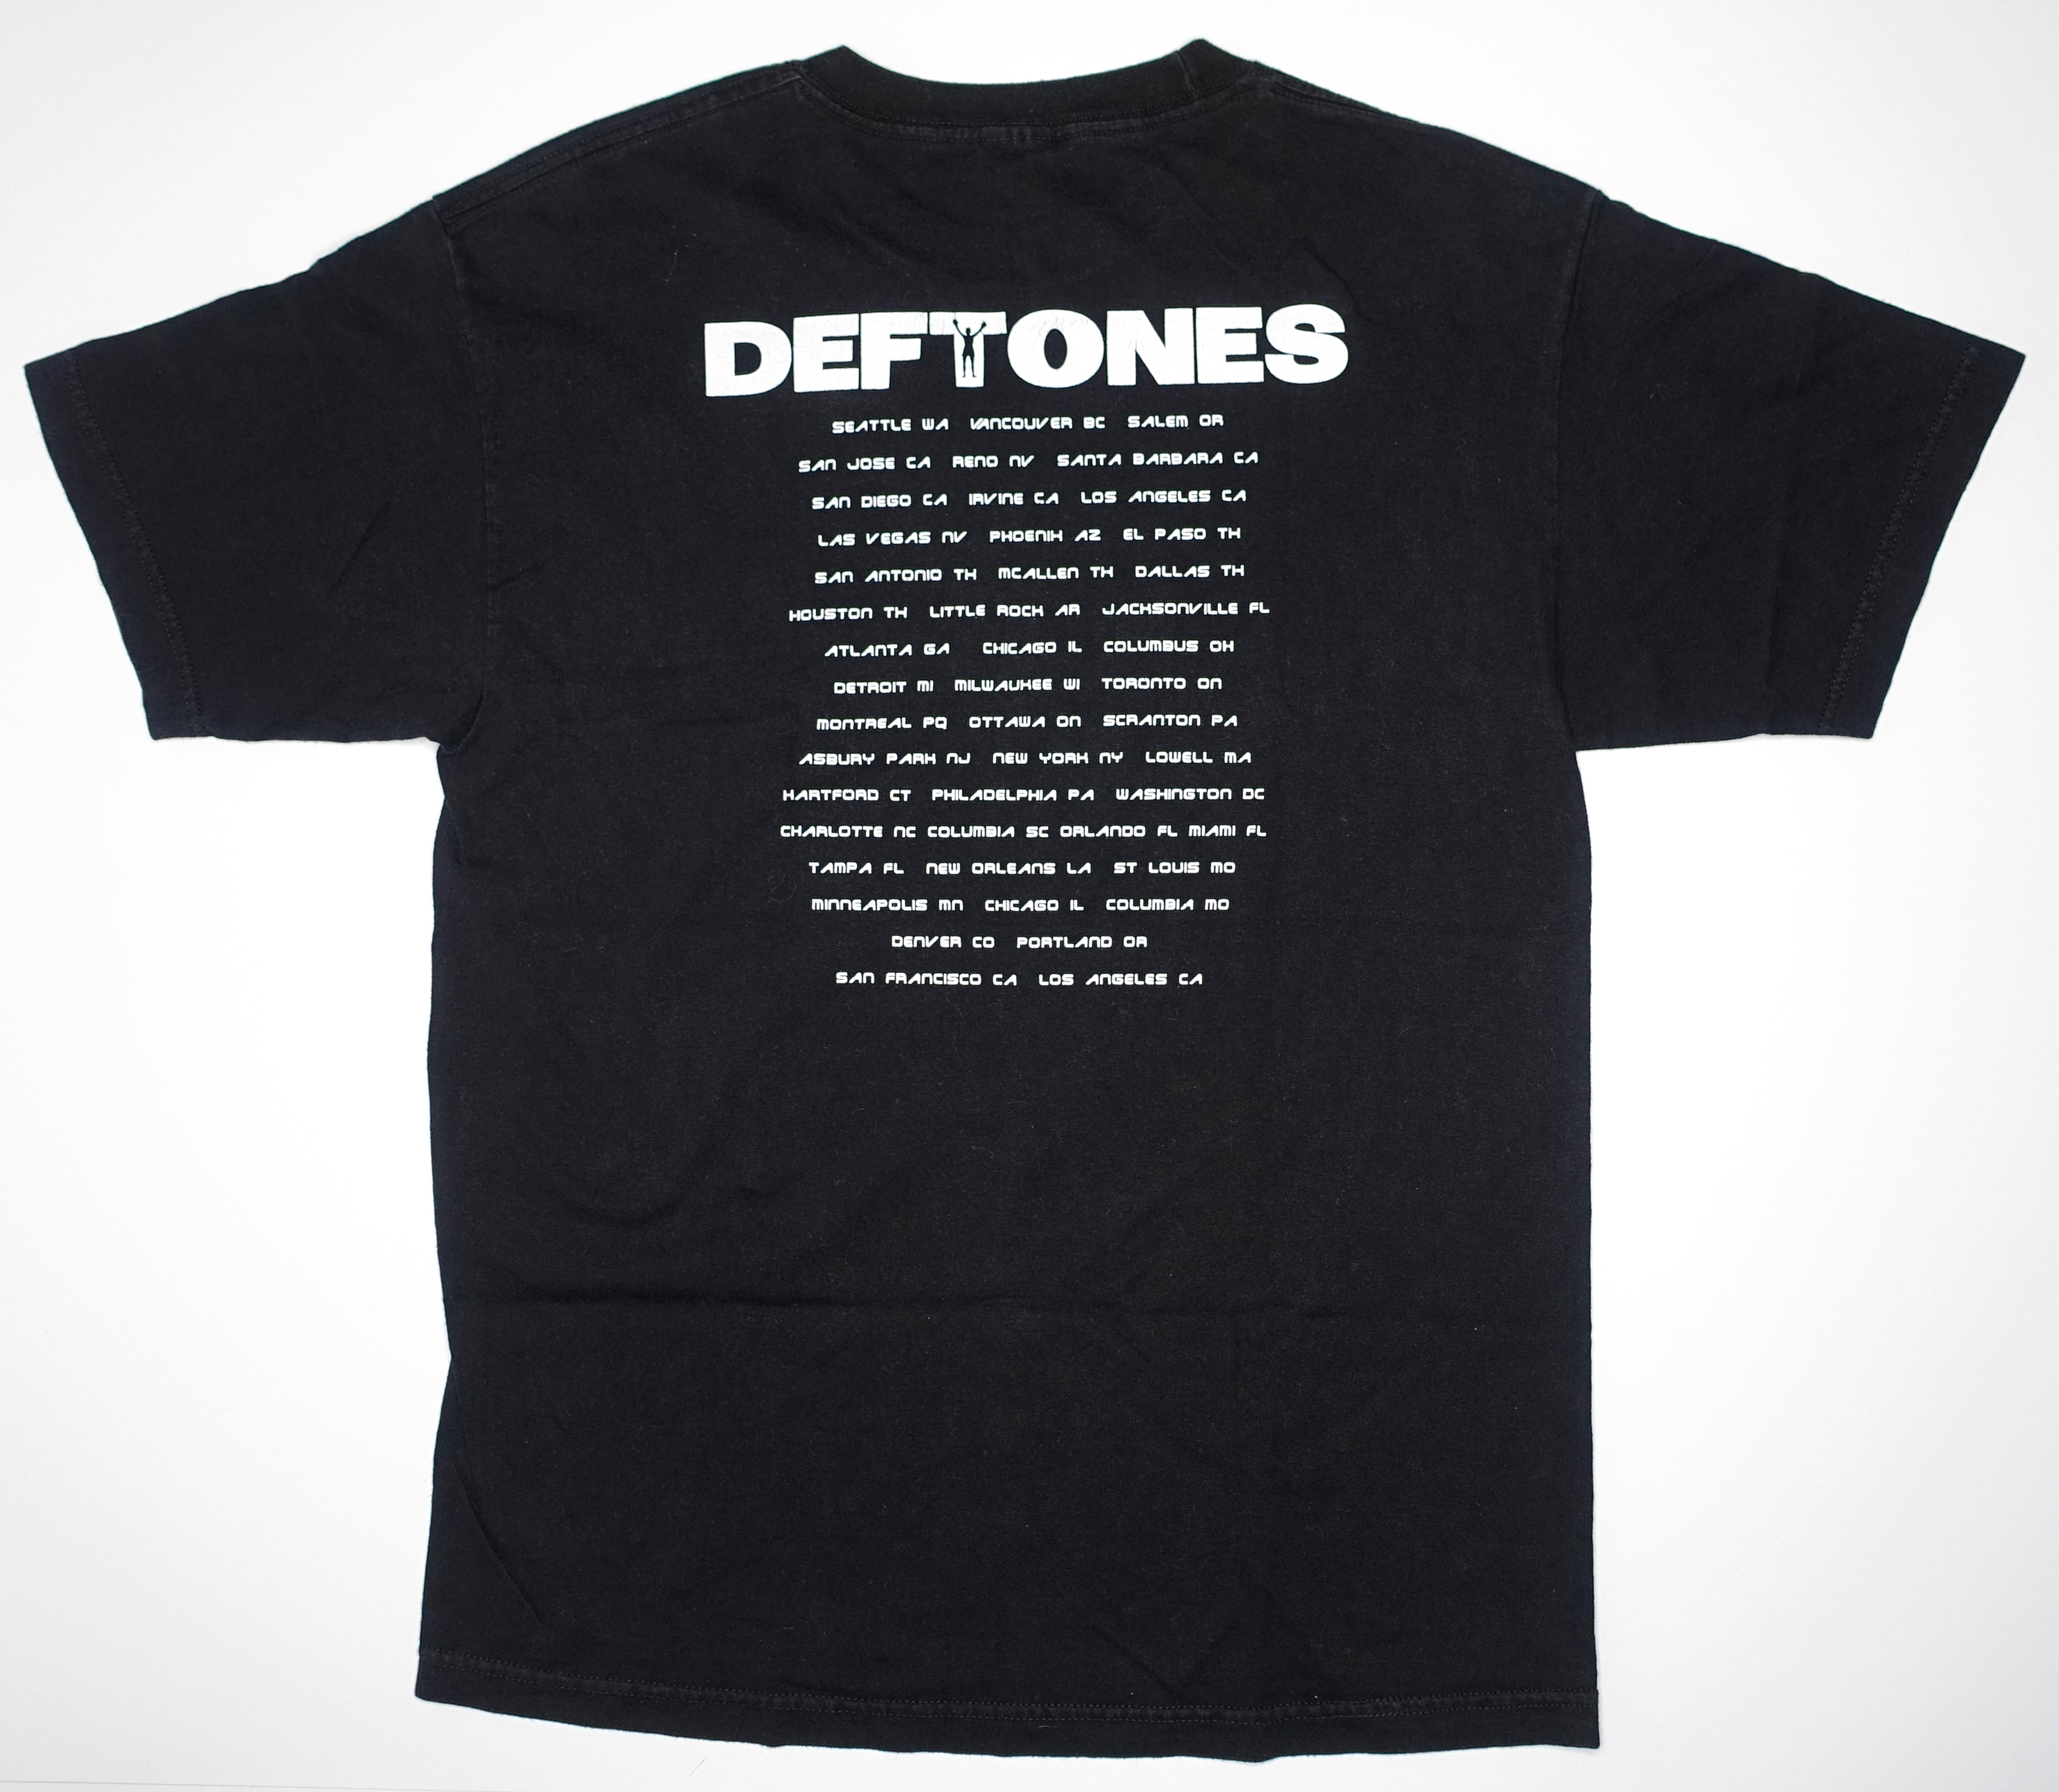 Deftones - White Pony 2000 US Tour Issue Shirt Size Large